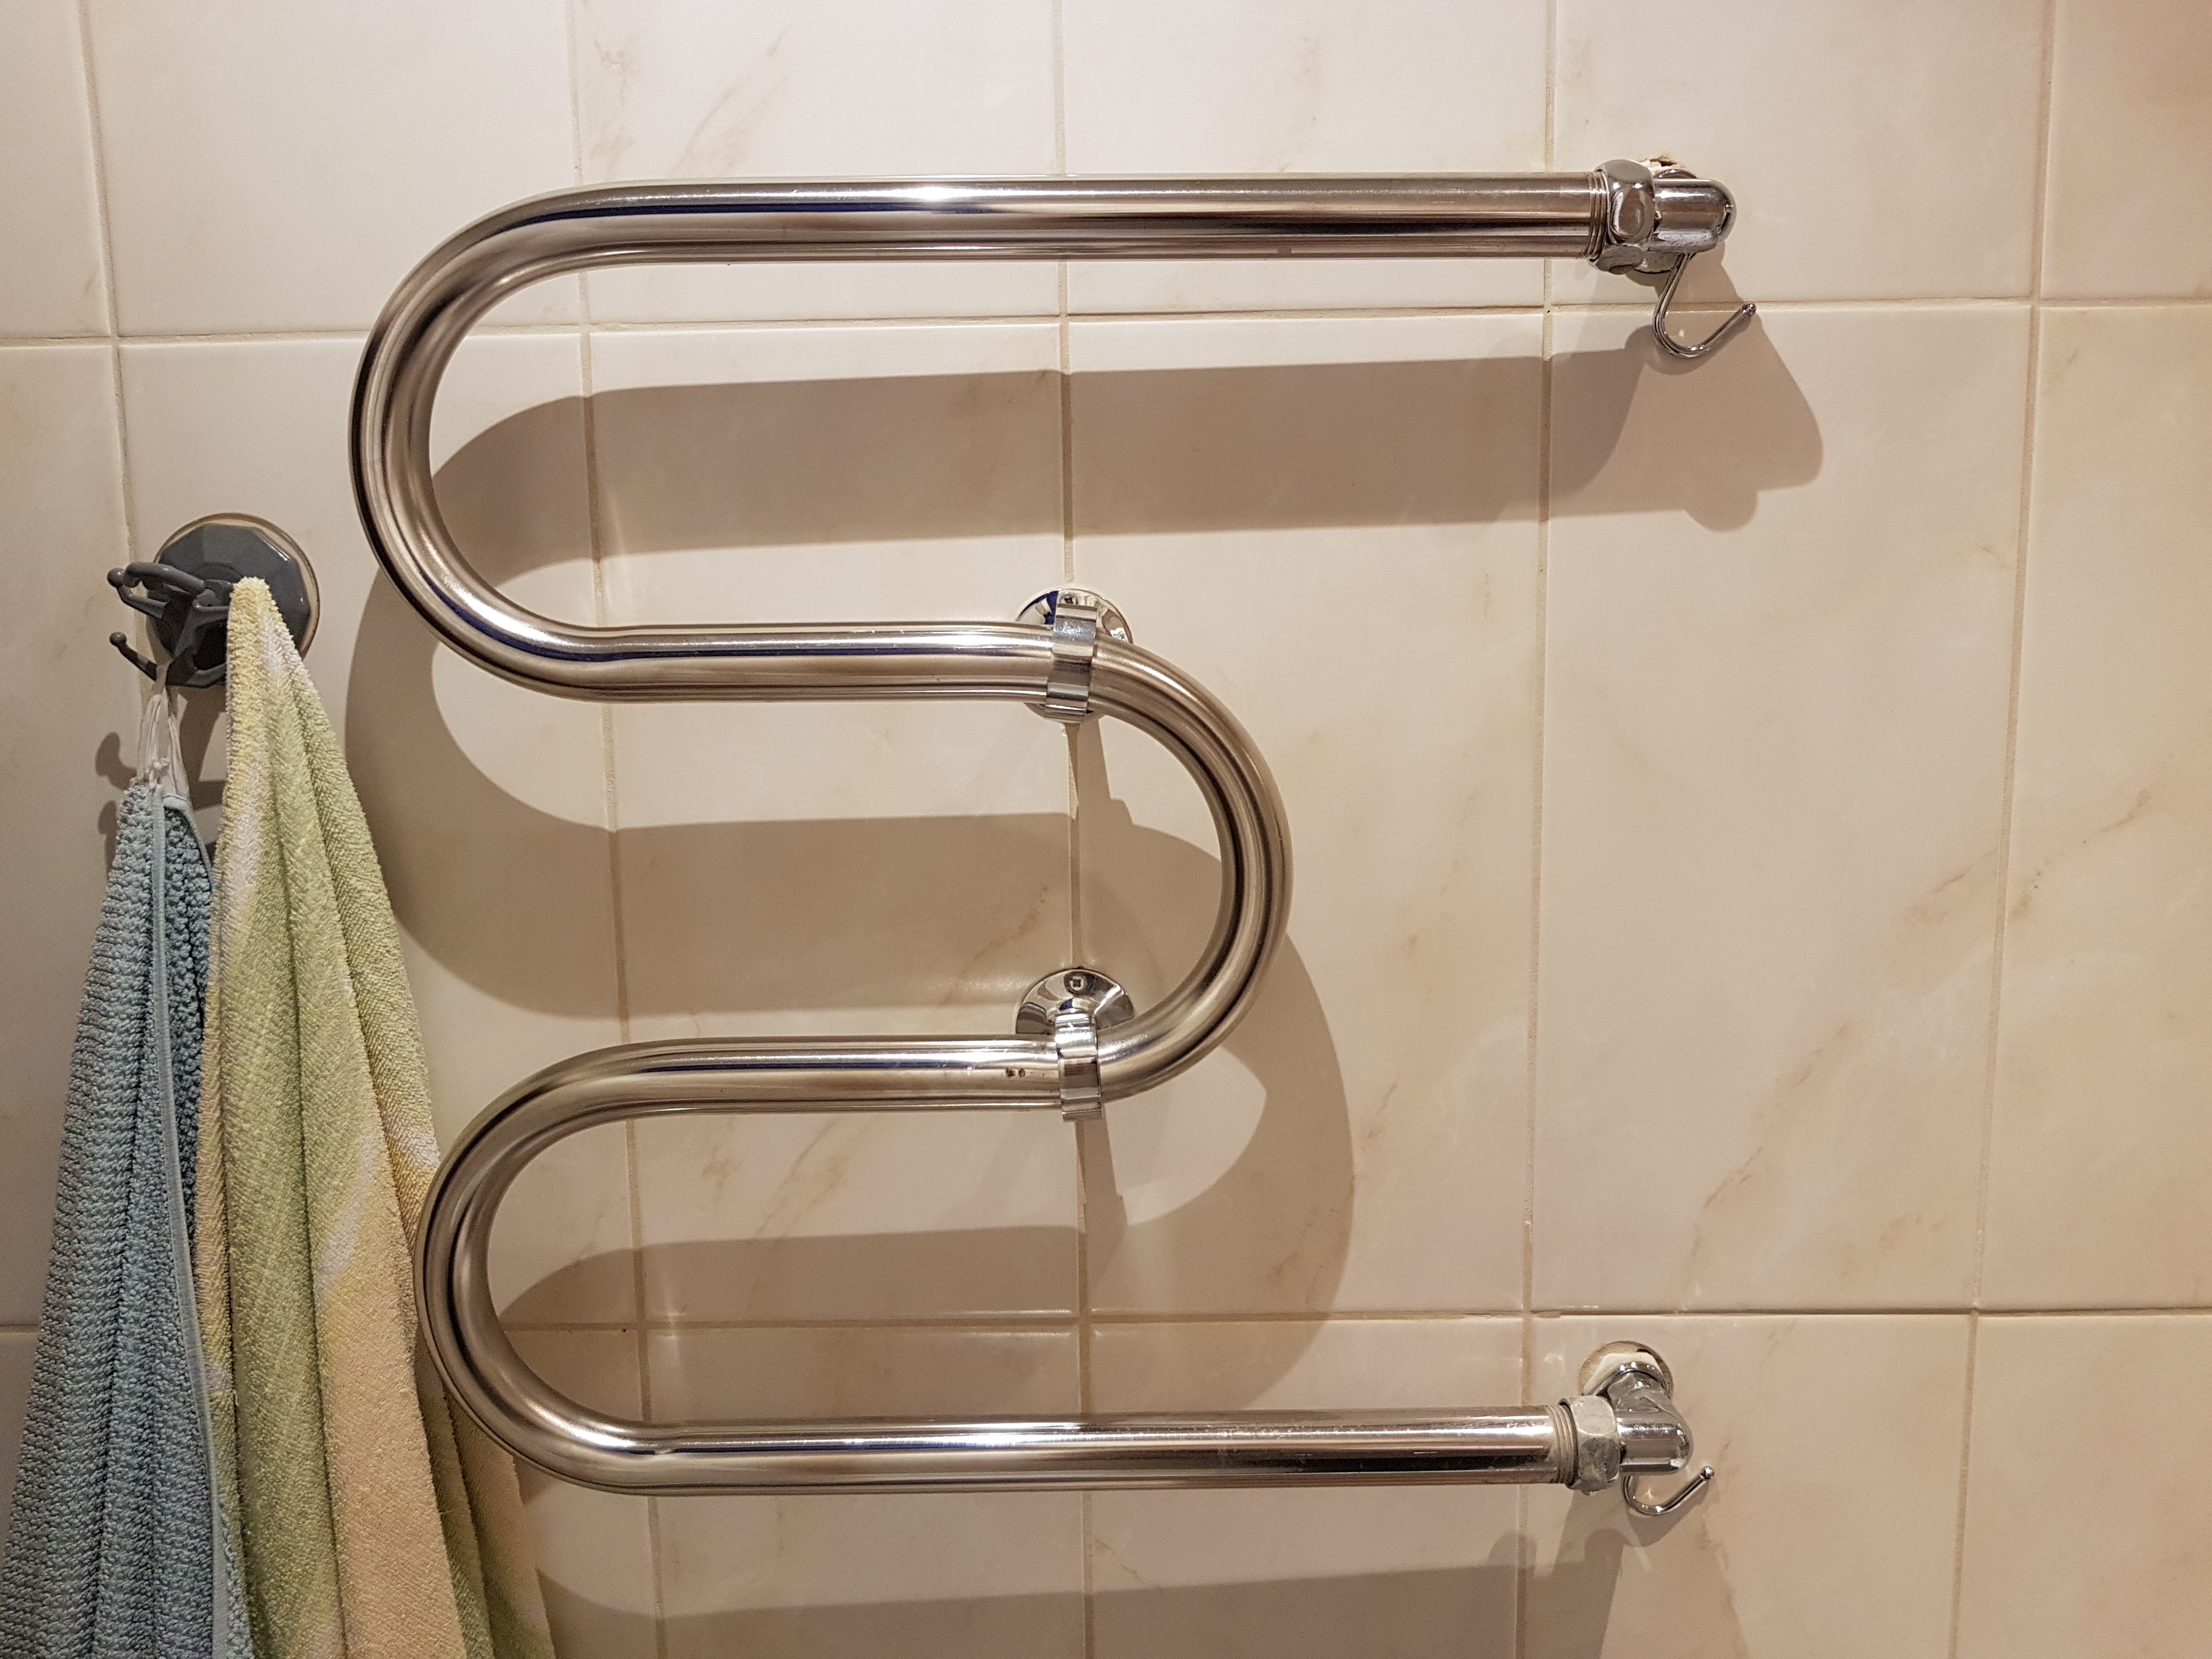 Змеевик для ванной комнаты: советы по выбору и установке